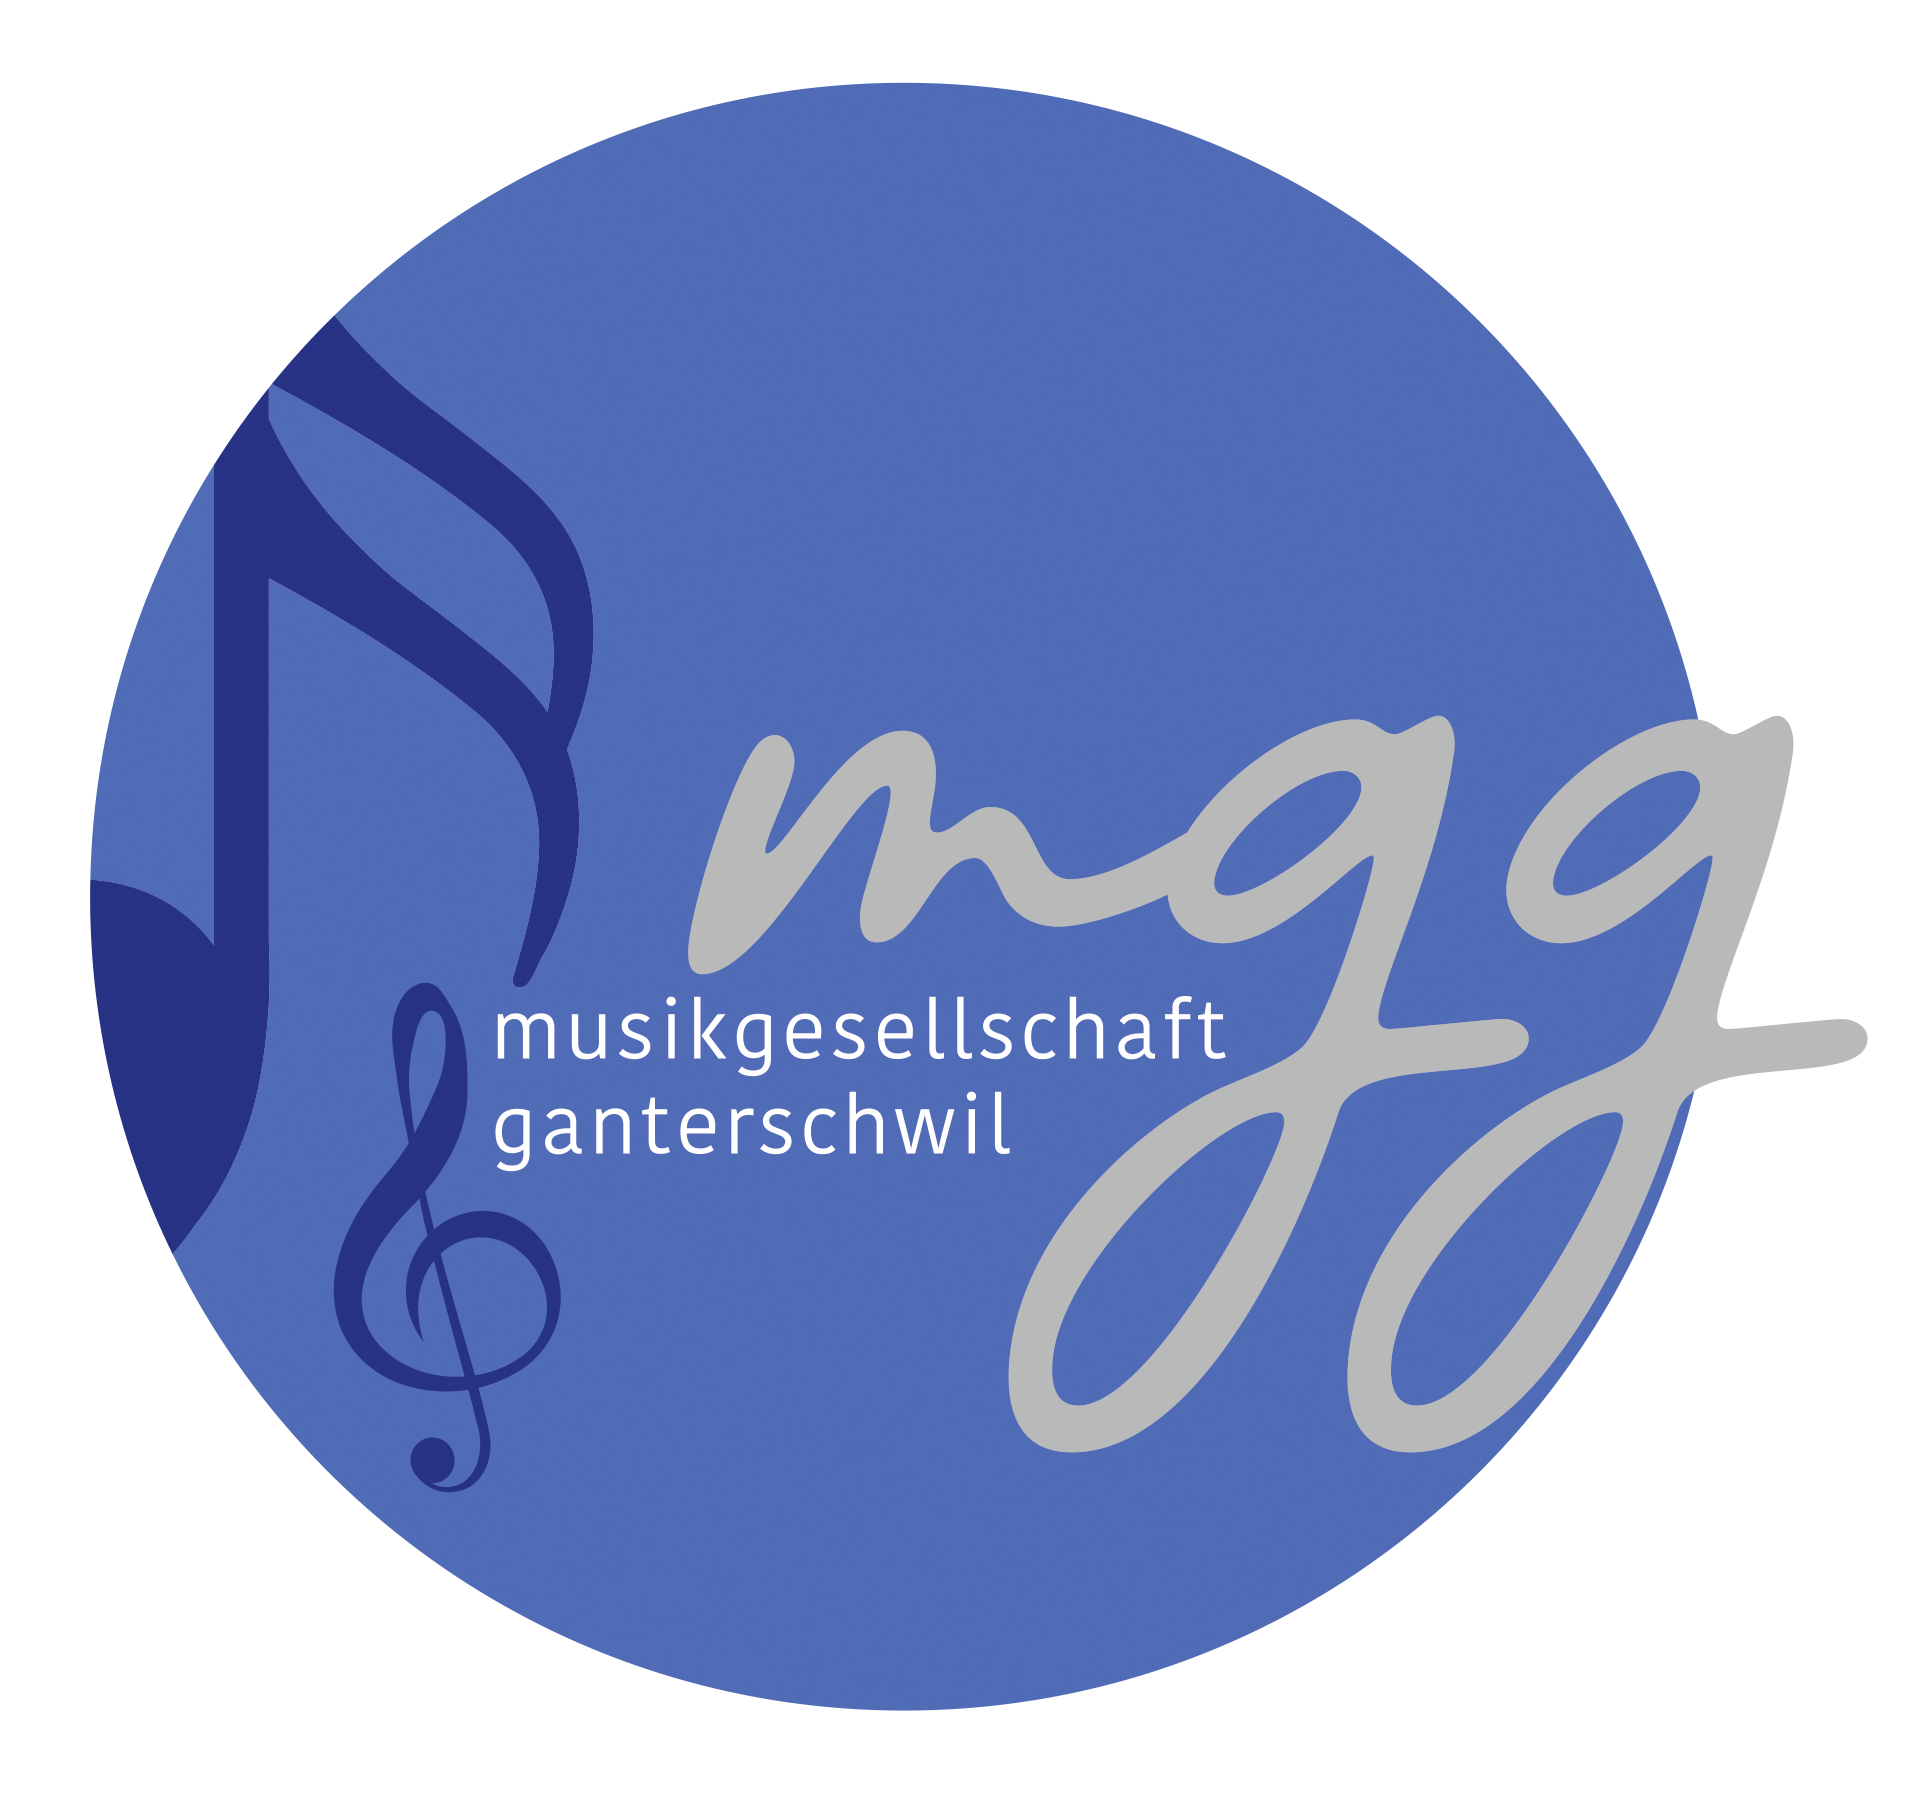 Musikgesellschaft Ganterschwil